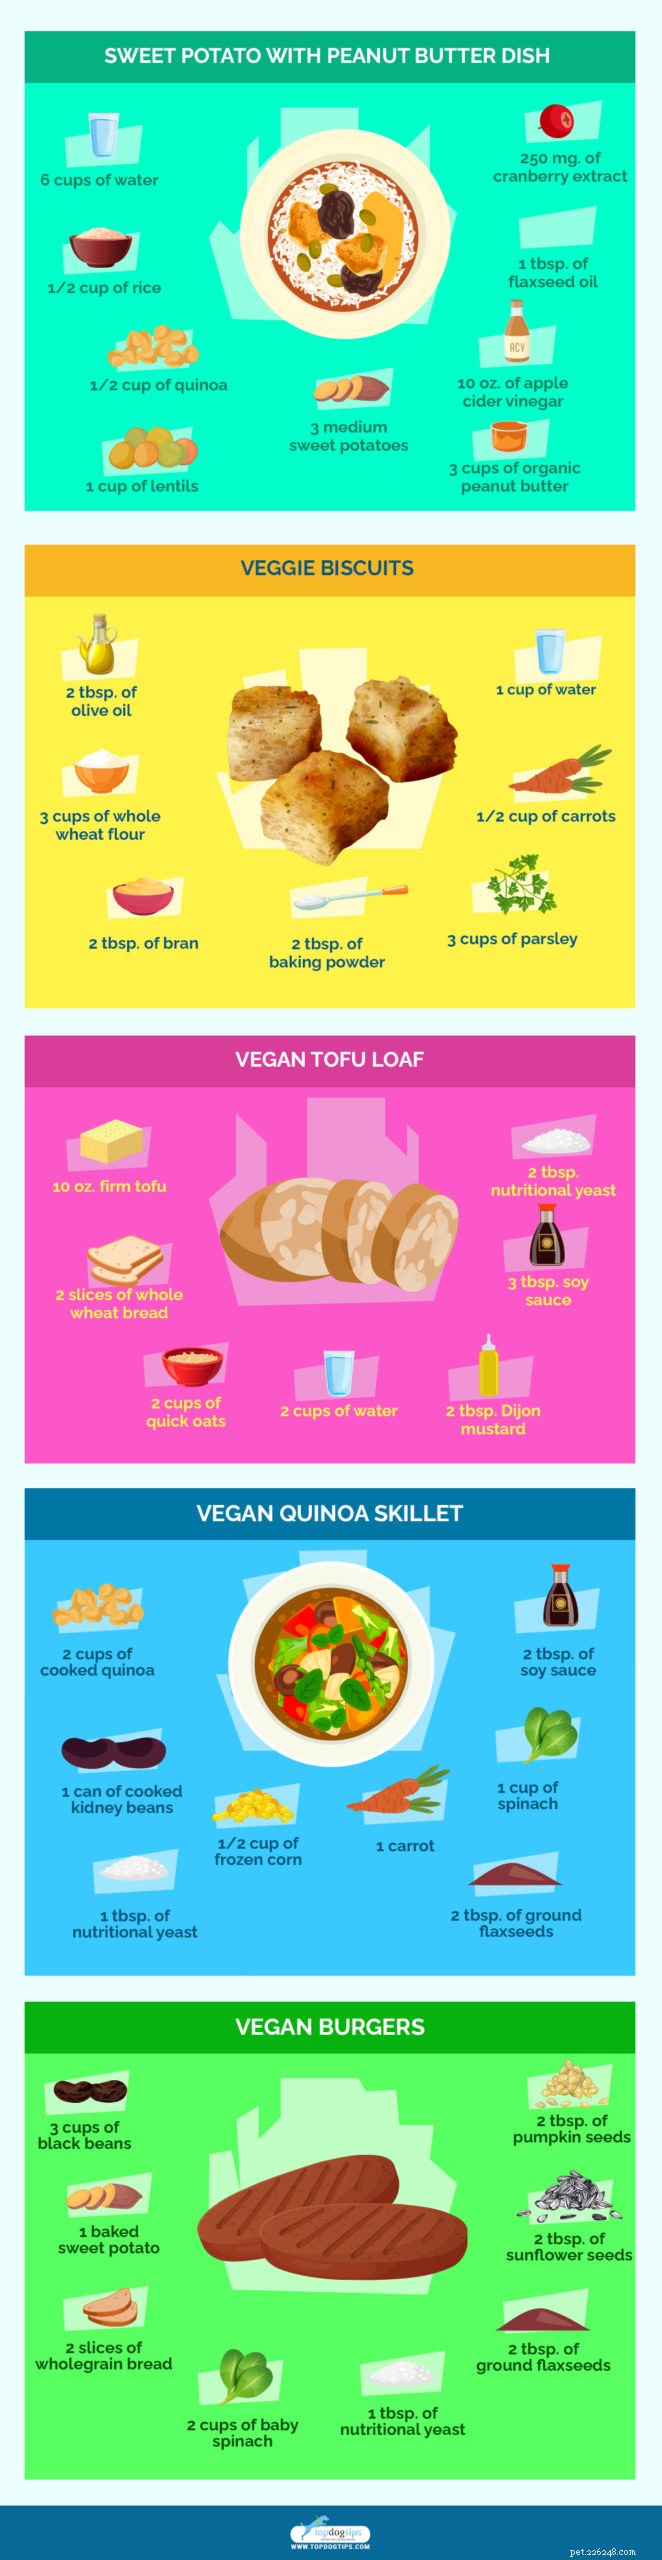 10 beste zelfgemaakte veganistische recepten voor hondenvoer